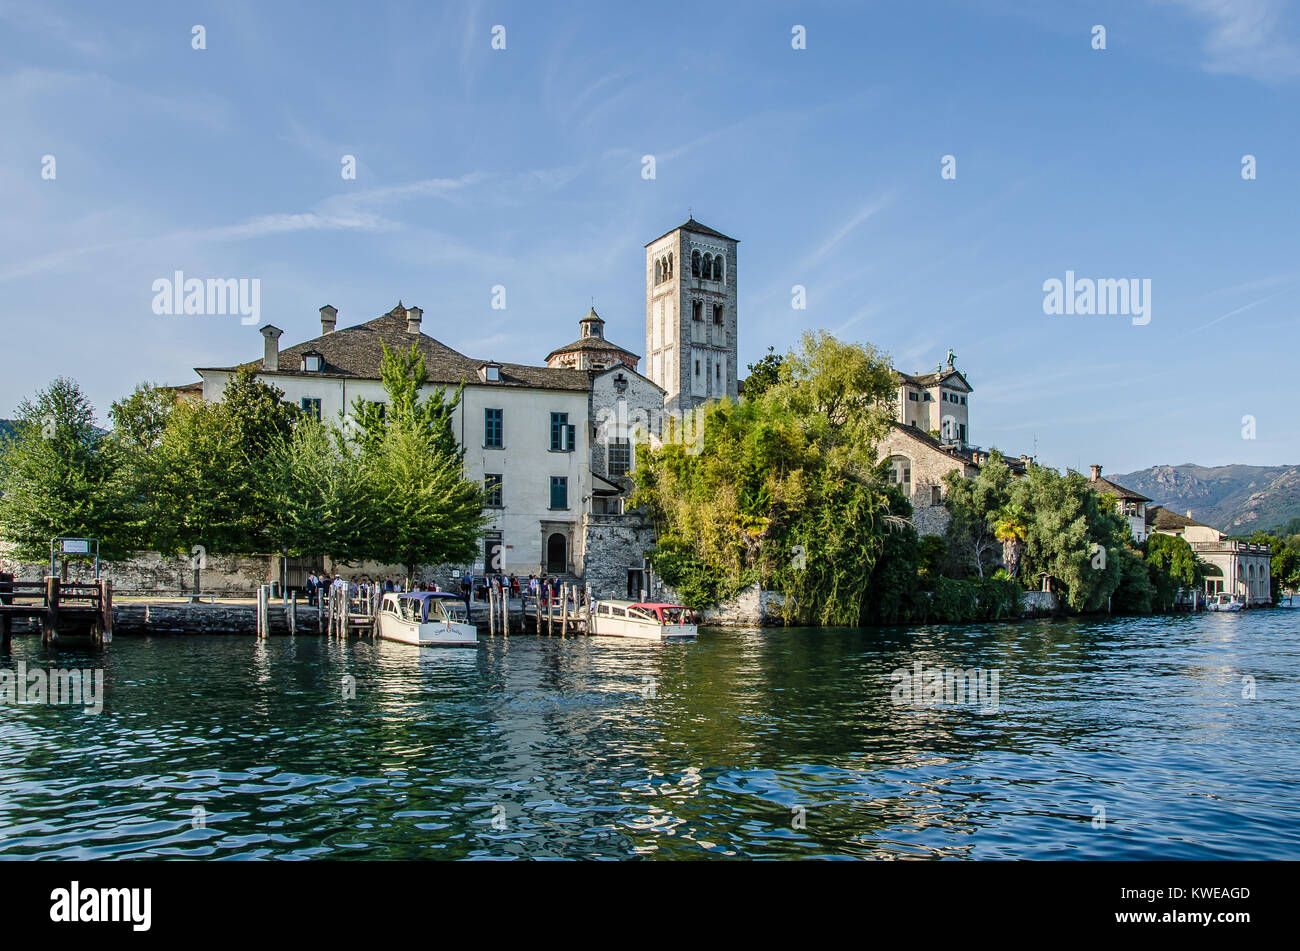 Il lago d' Orta è uno dei più belli dei laghi italiani. Isola di San Giulio o isola di San Giulio è un' isola all' interno del Lago d'Orta in Piemonte. Foto Stock